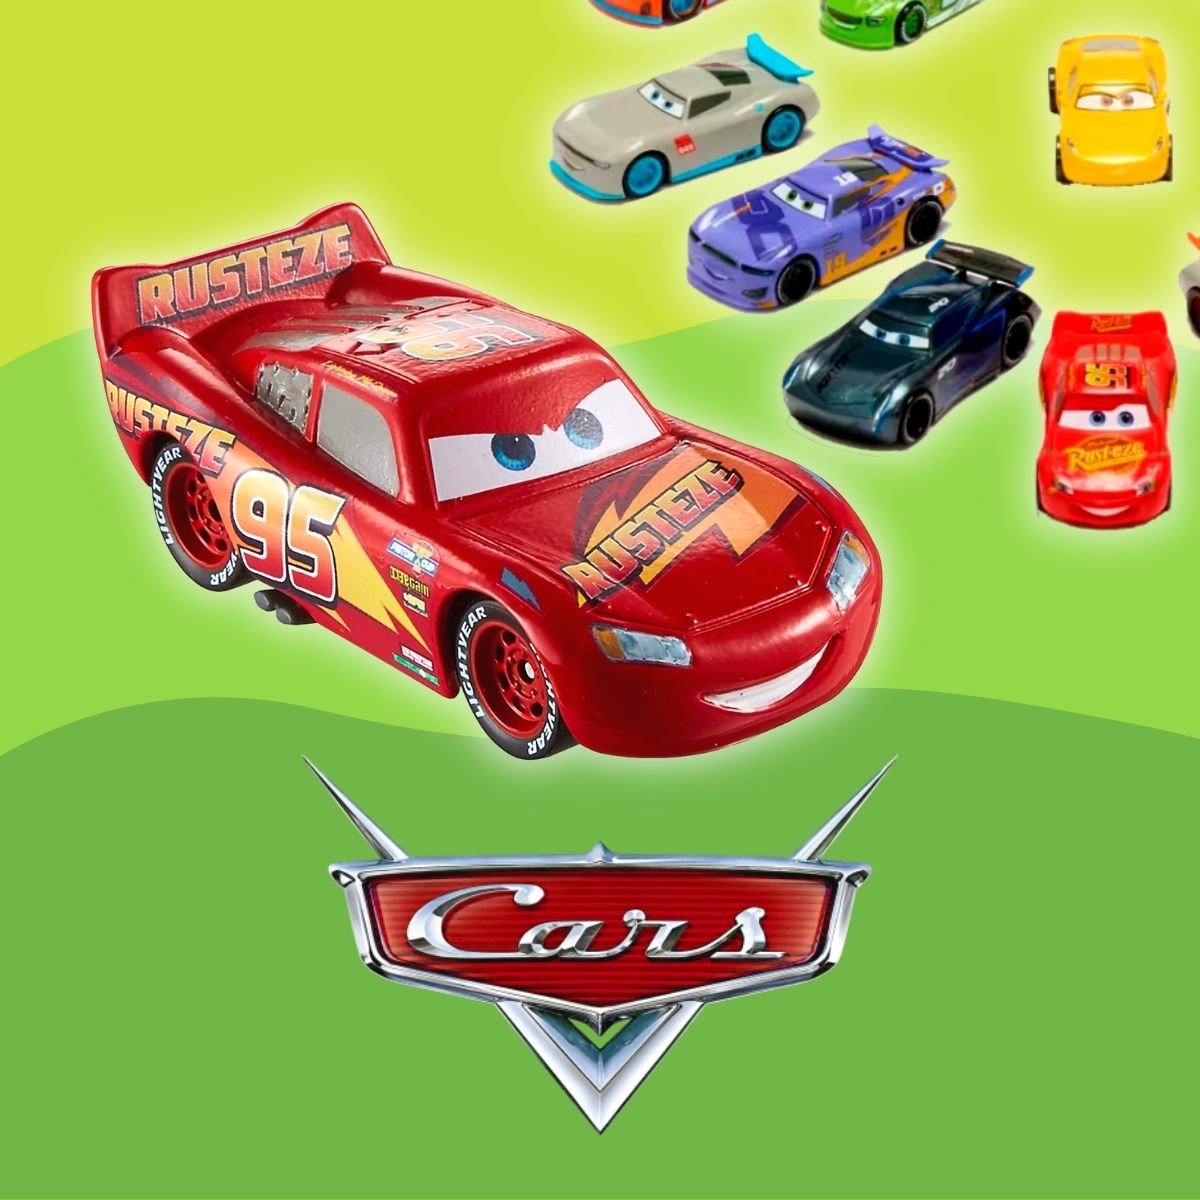 Cotxes Cars